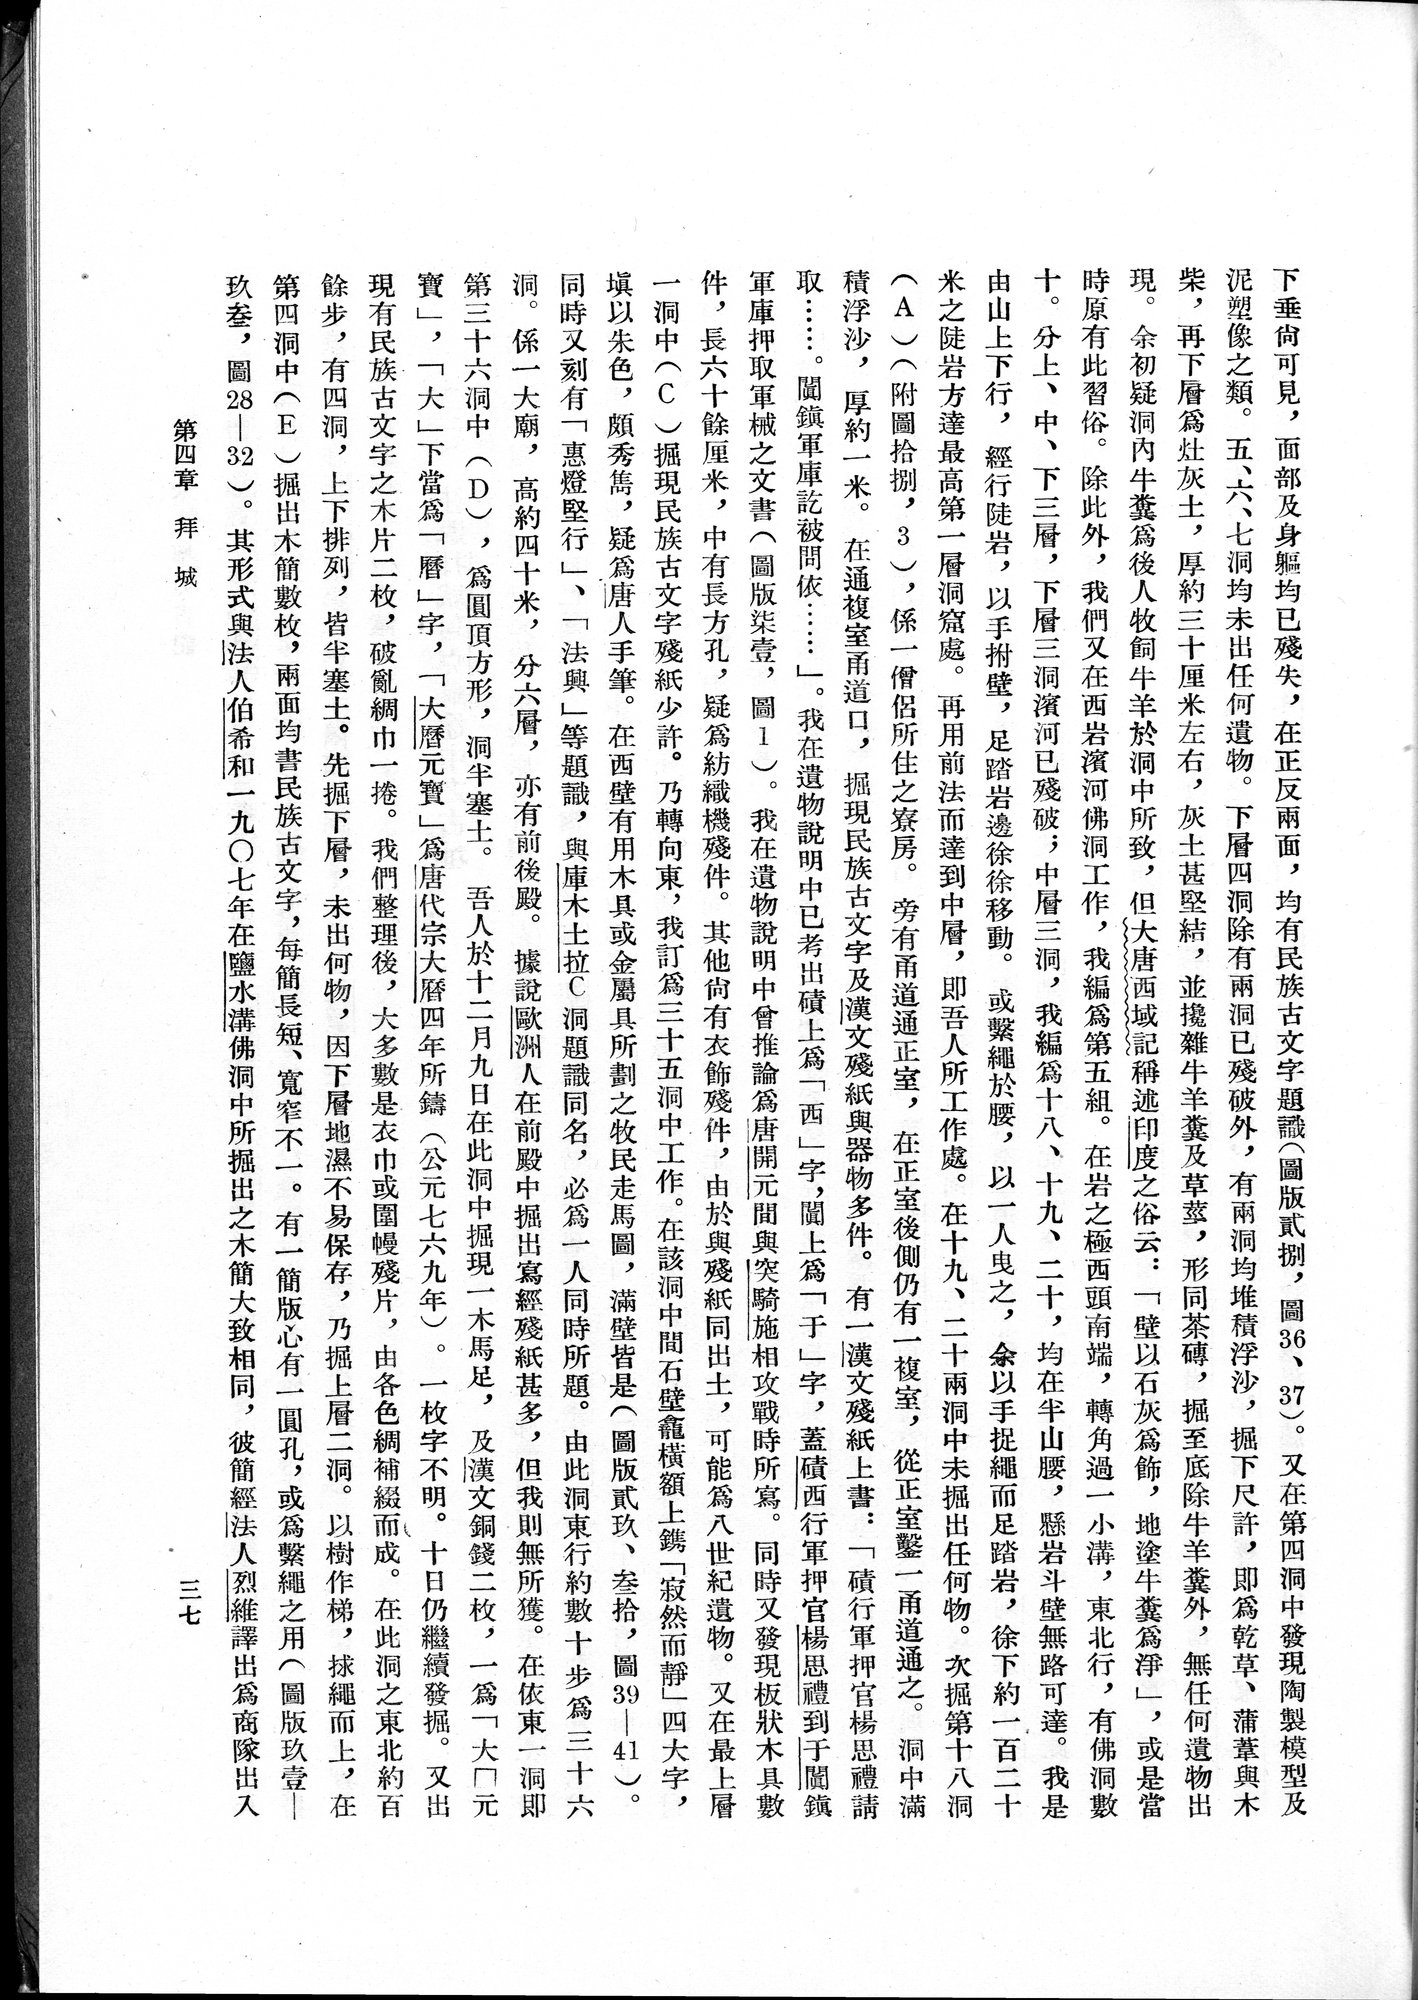 塔里木盆地考古記 : vol.1 / Page 61 (Grayscale High Resolution Image)